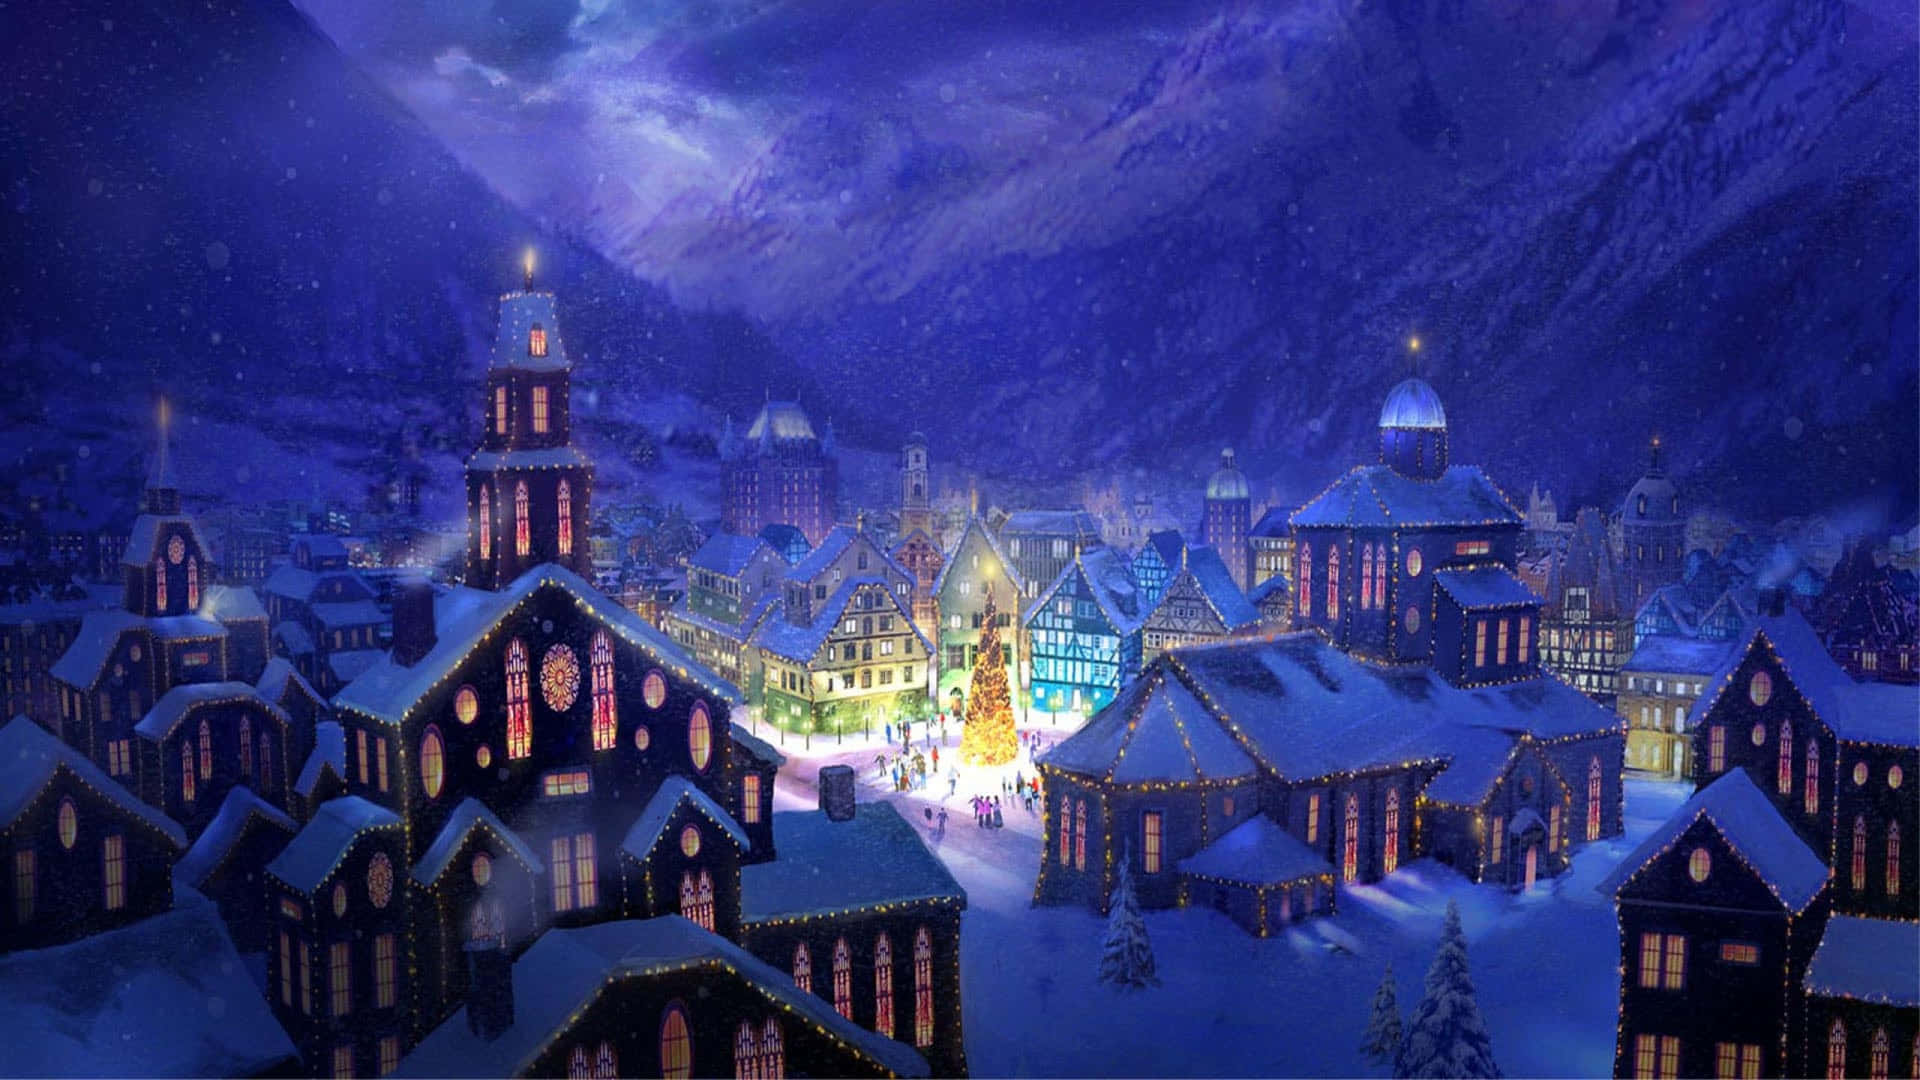 Idyllic Snowy Village in Winter Wallpaper